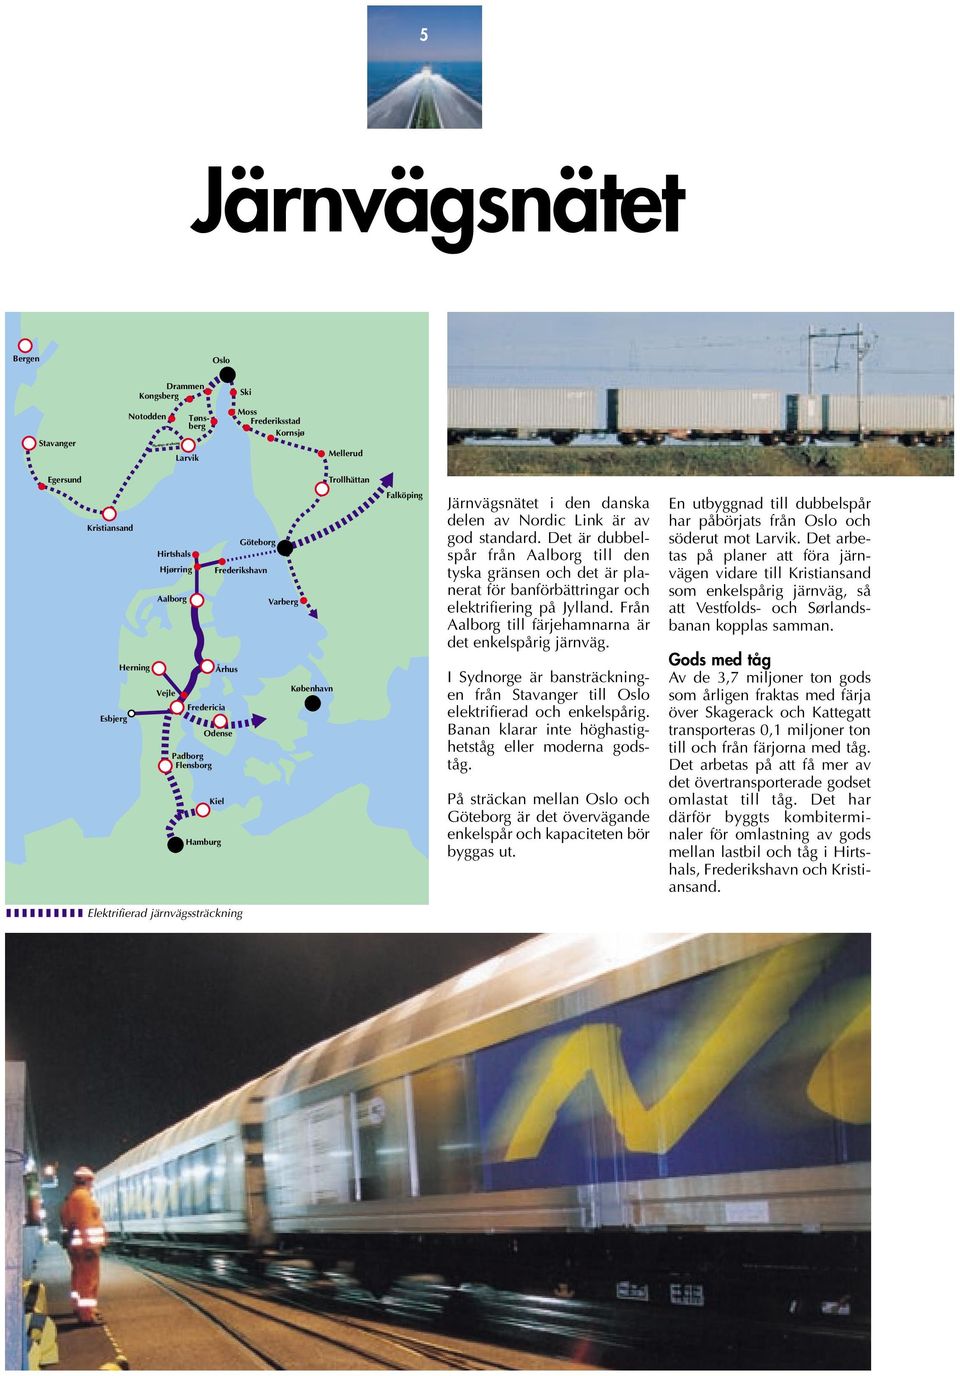 Det är dubbelspår från Aalborg till den tyska gränsen och det är planerat för banförbättringar och elektrifiering på Jylland. Från Aalborg till färjehamnarna är det enkelspårig järnväg.